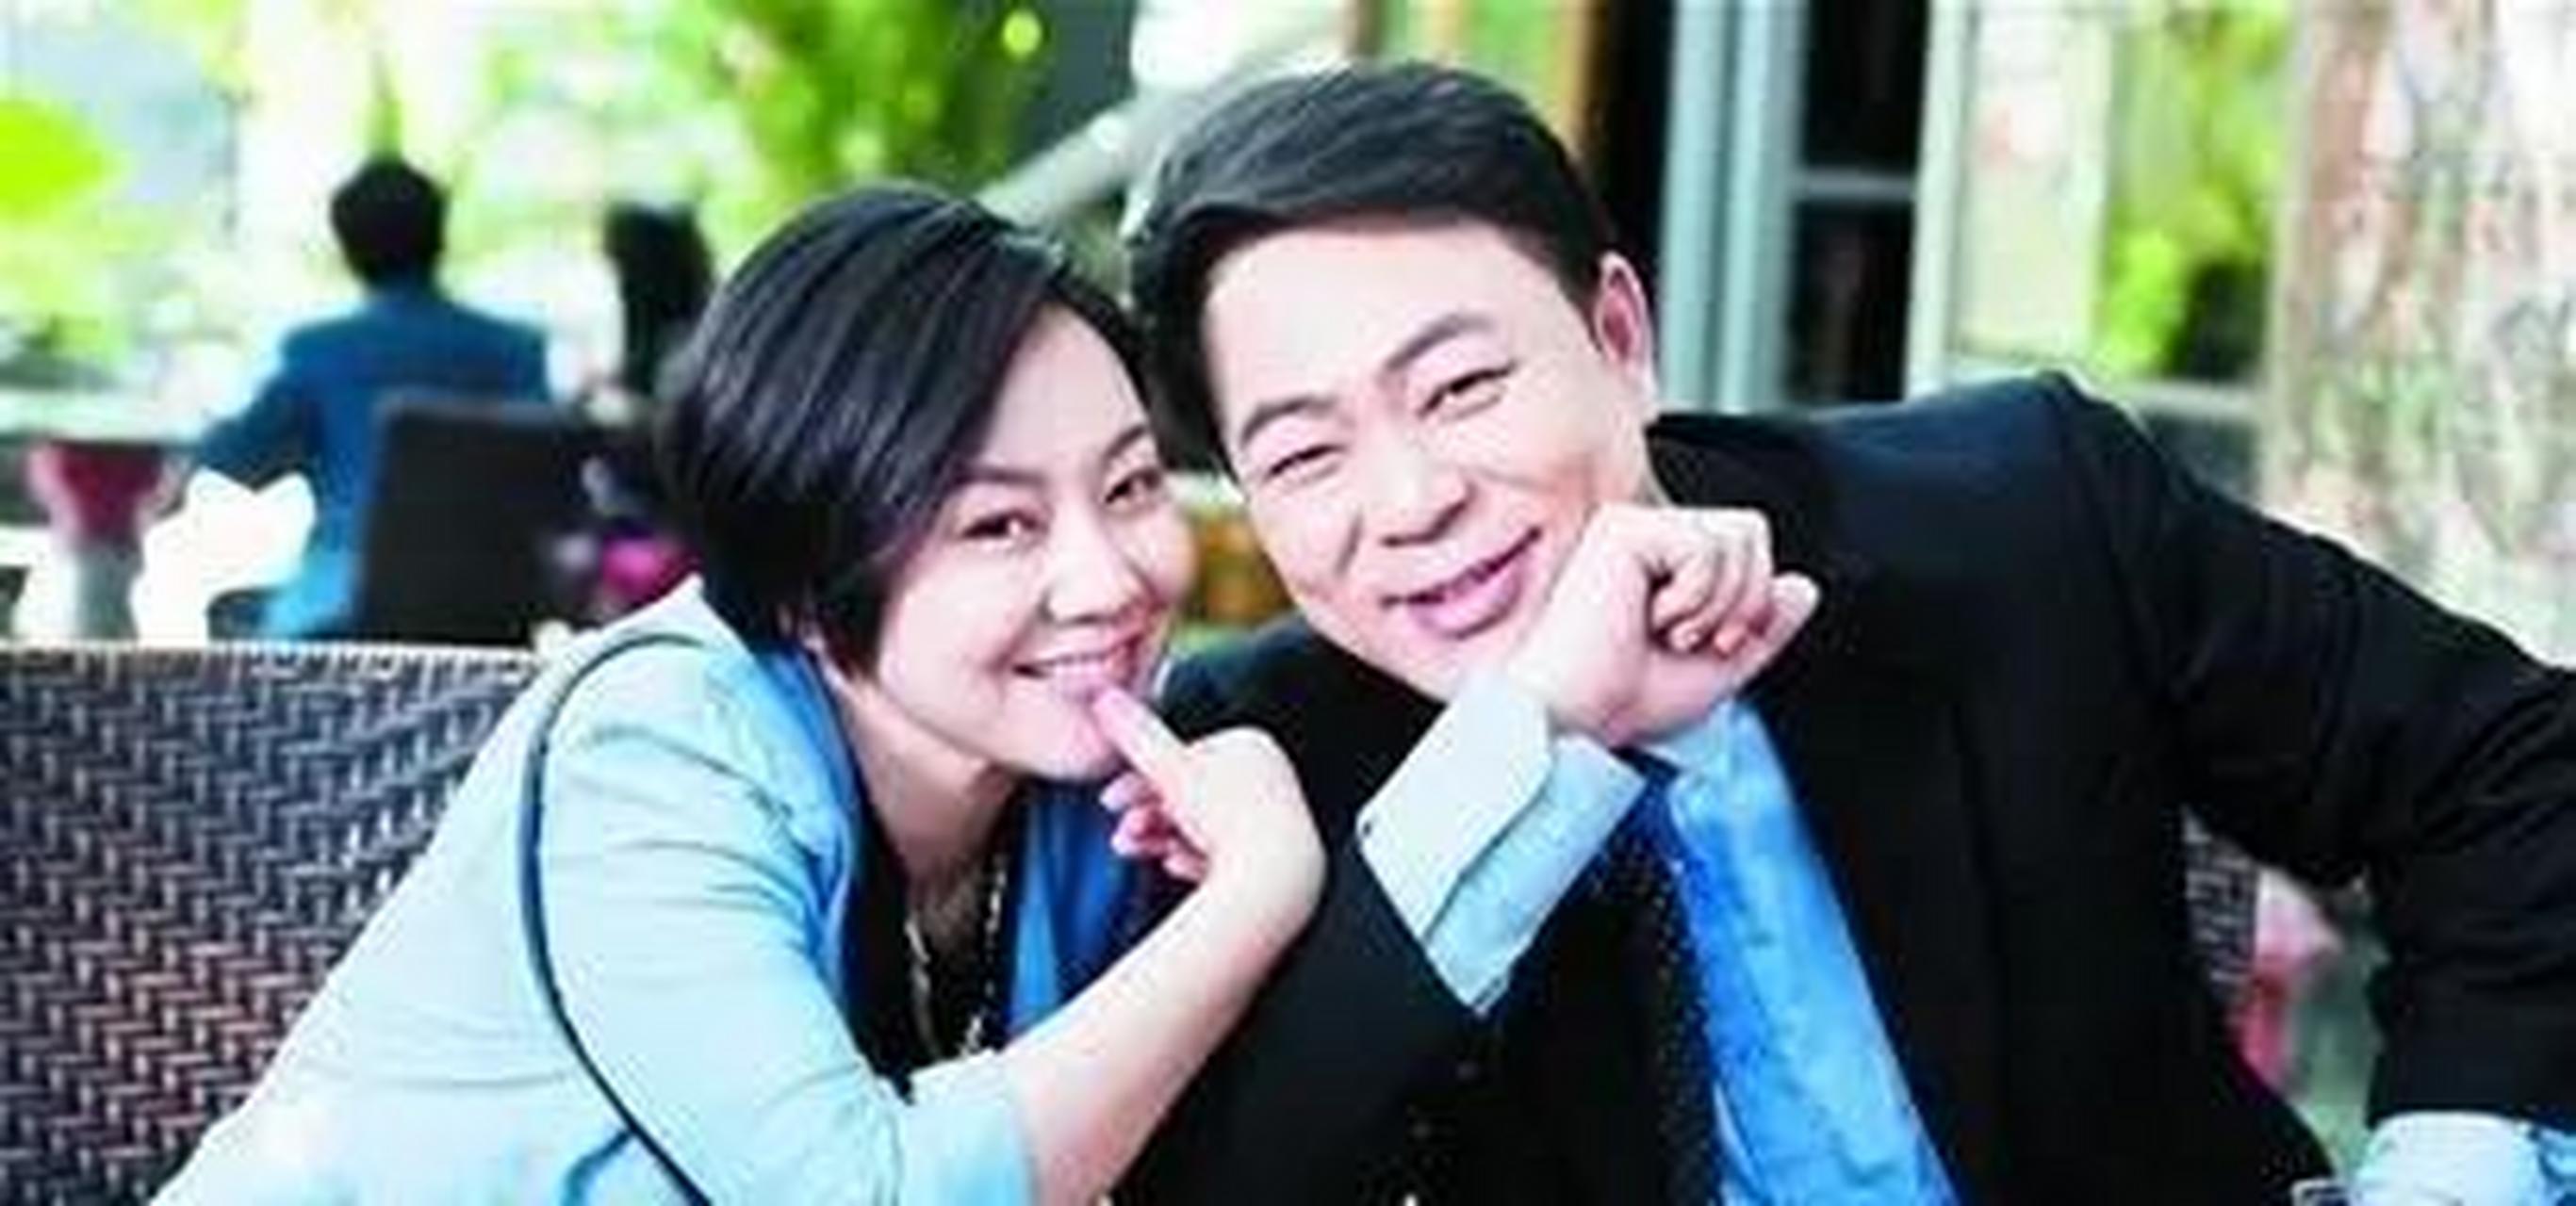 2004年,闫妮的老公邹伟进家就对闫妮说:我们离婚吧